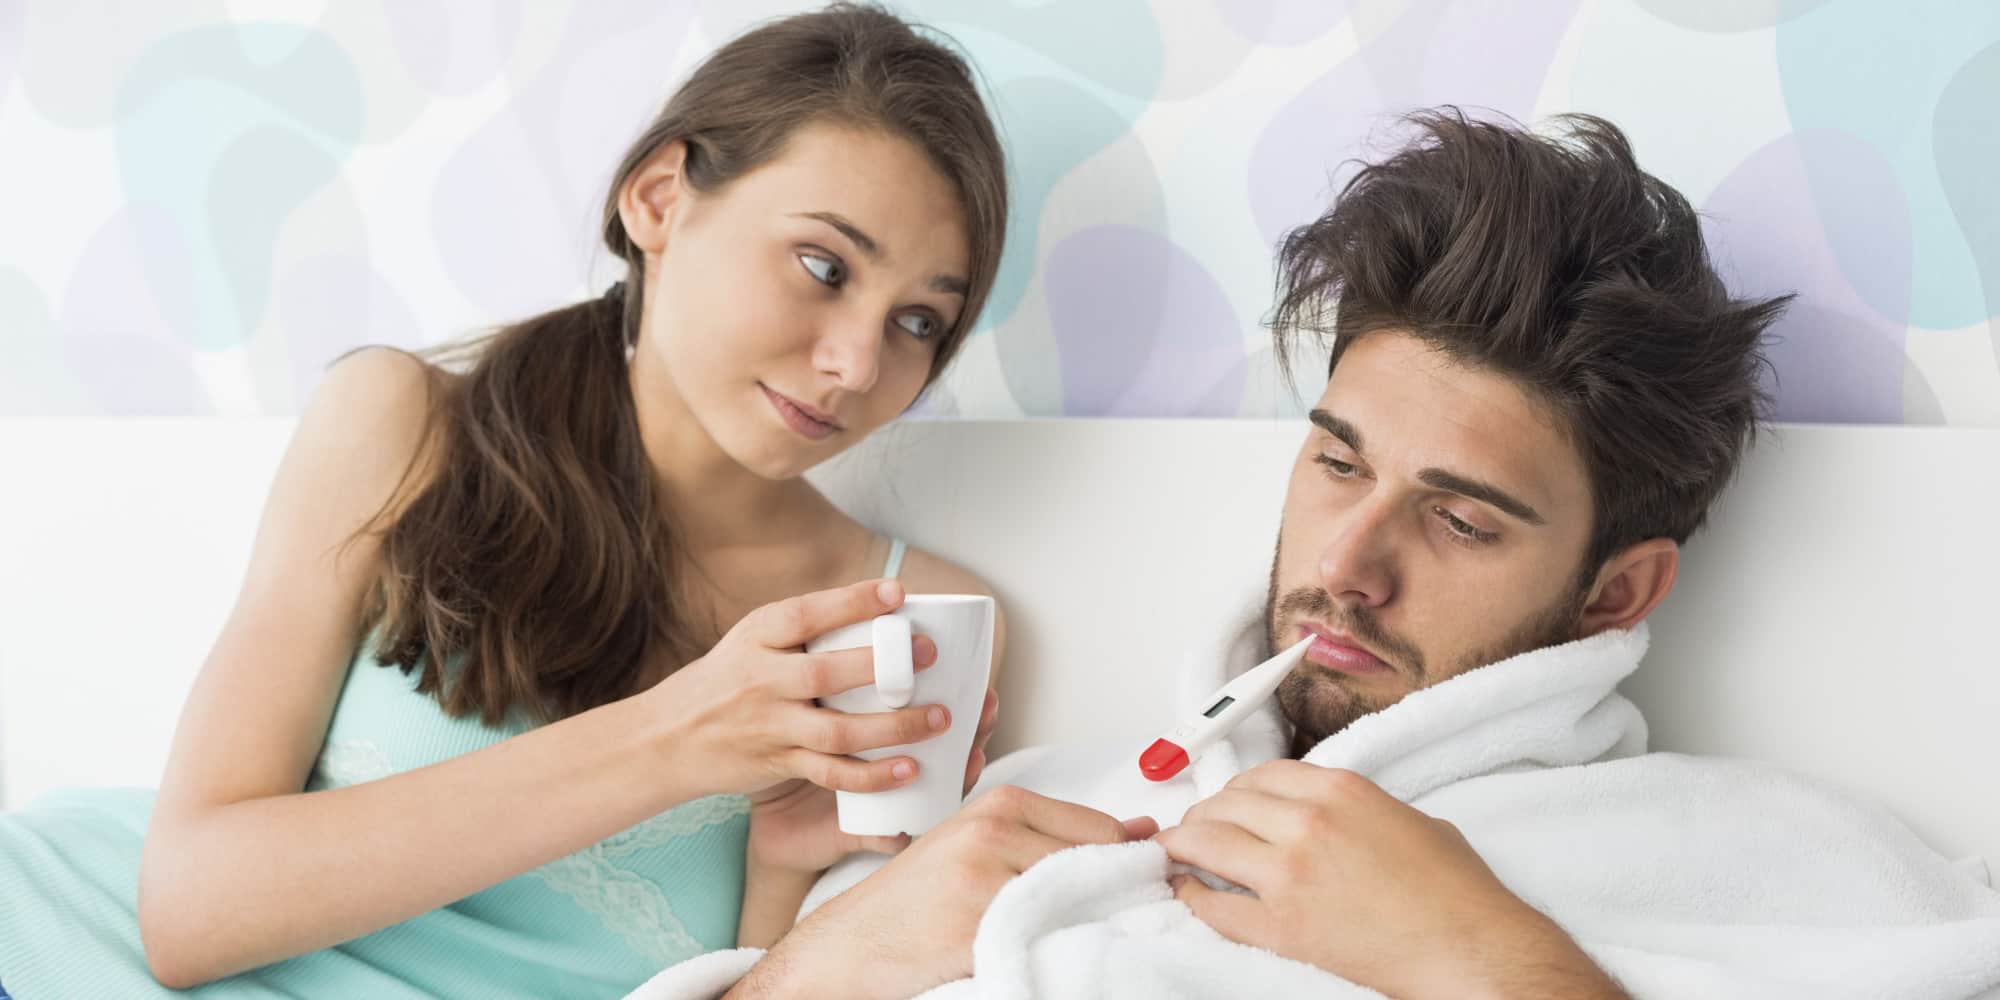 Možete li imati seks kad imate gripu?